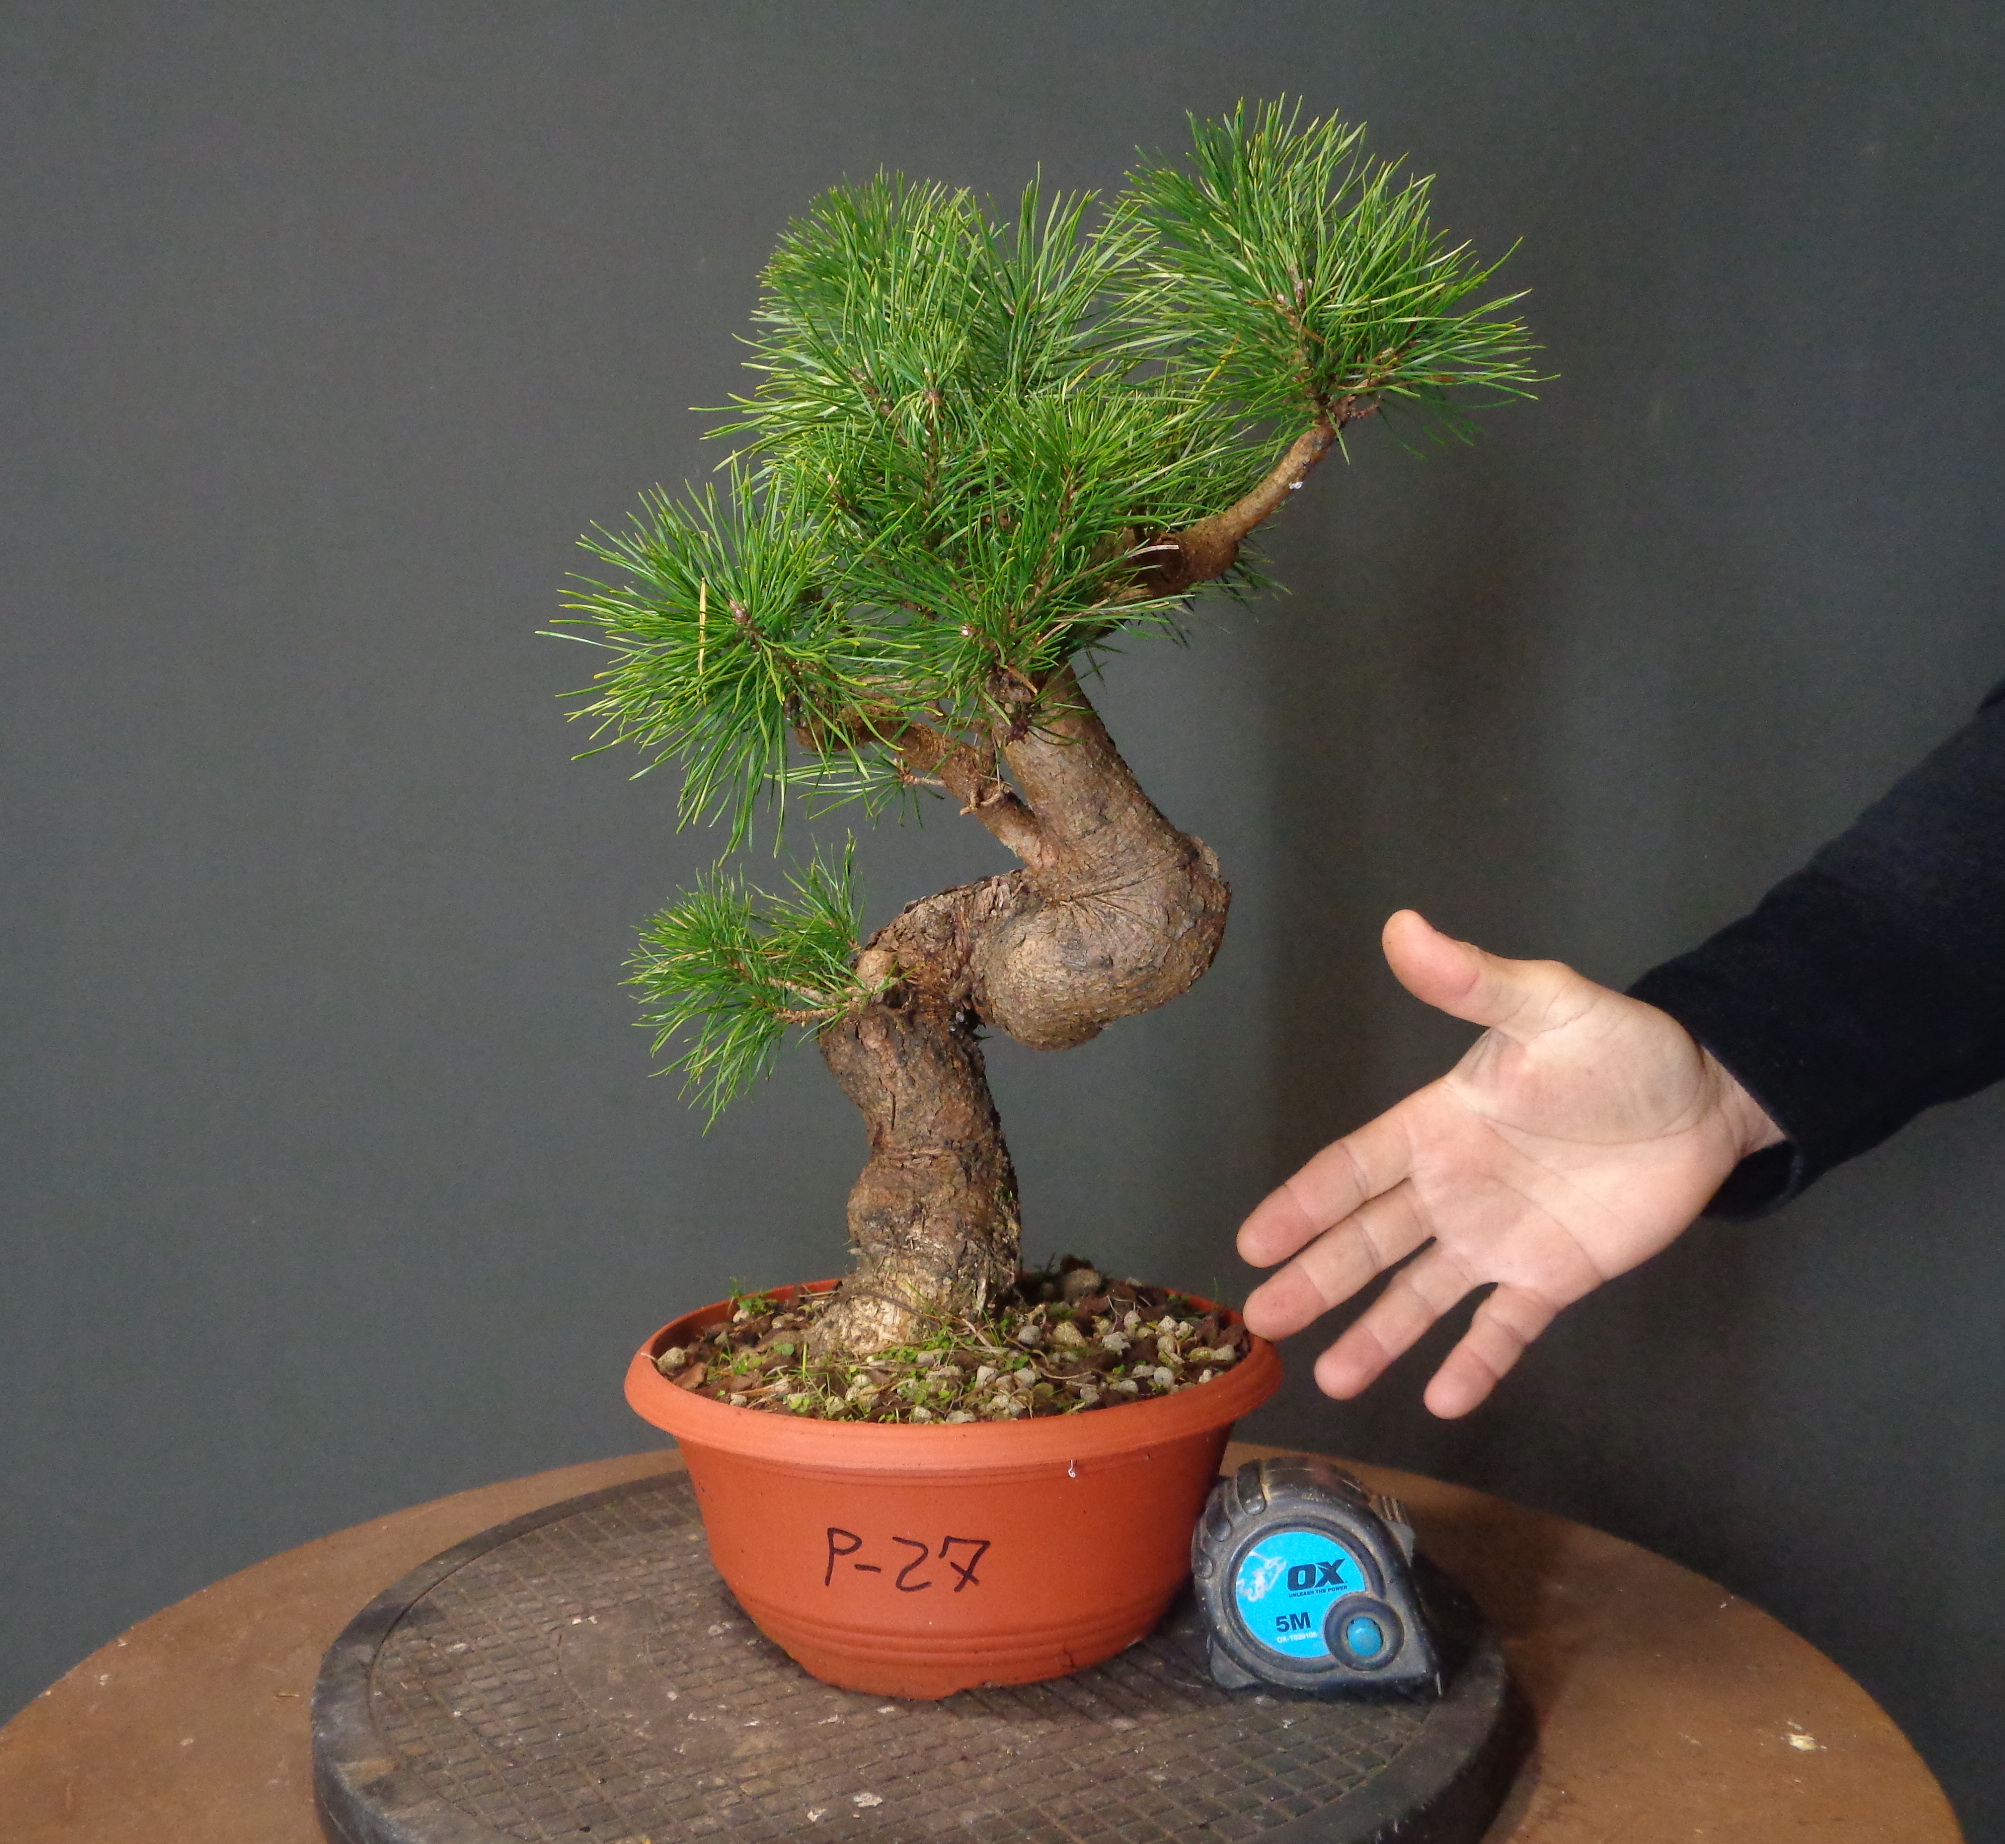 Pinus Sylvestris